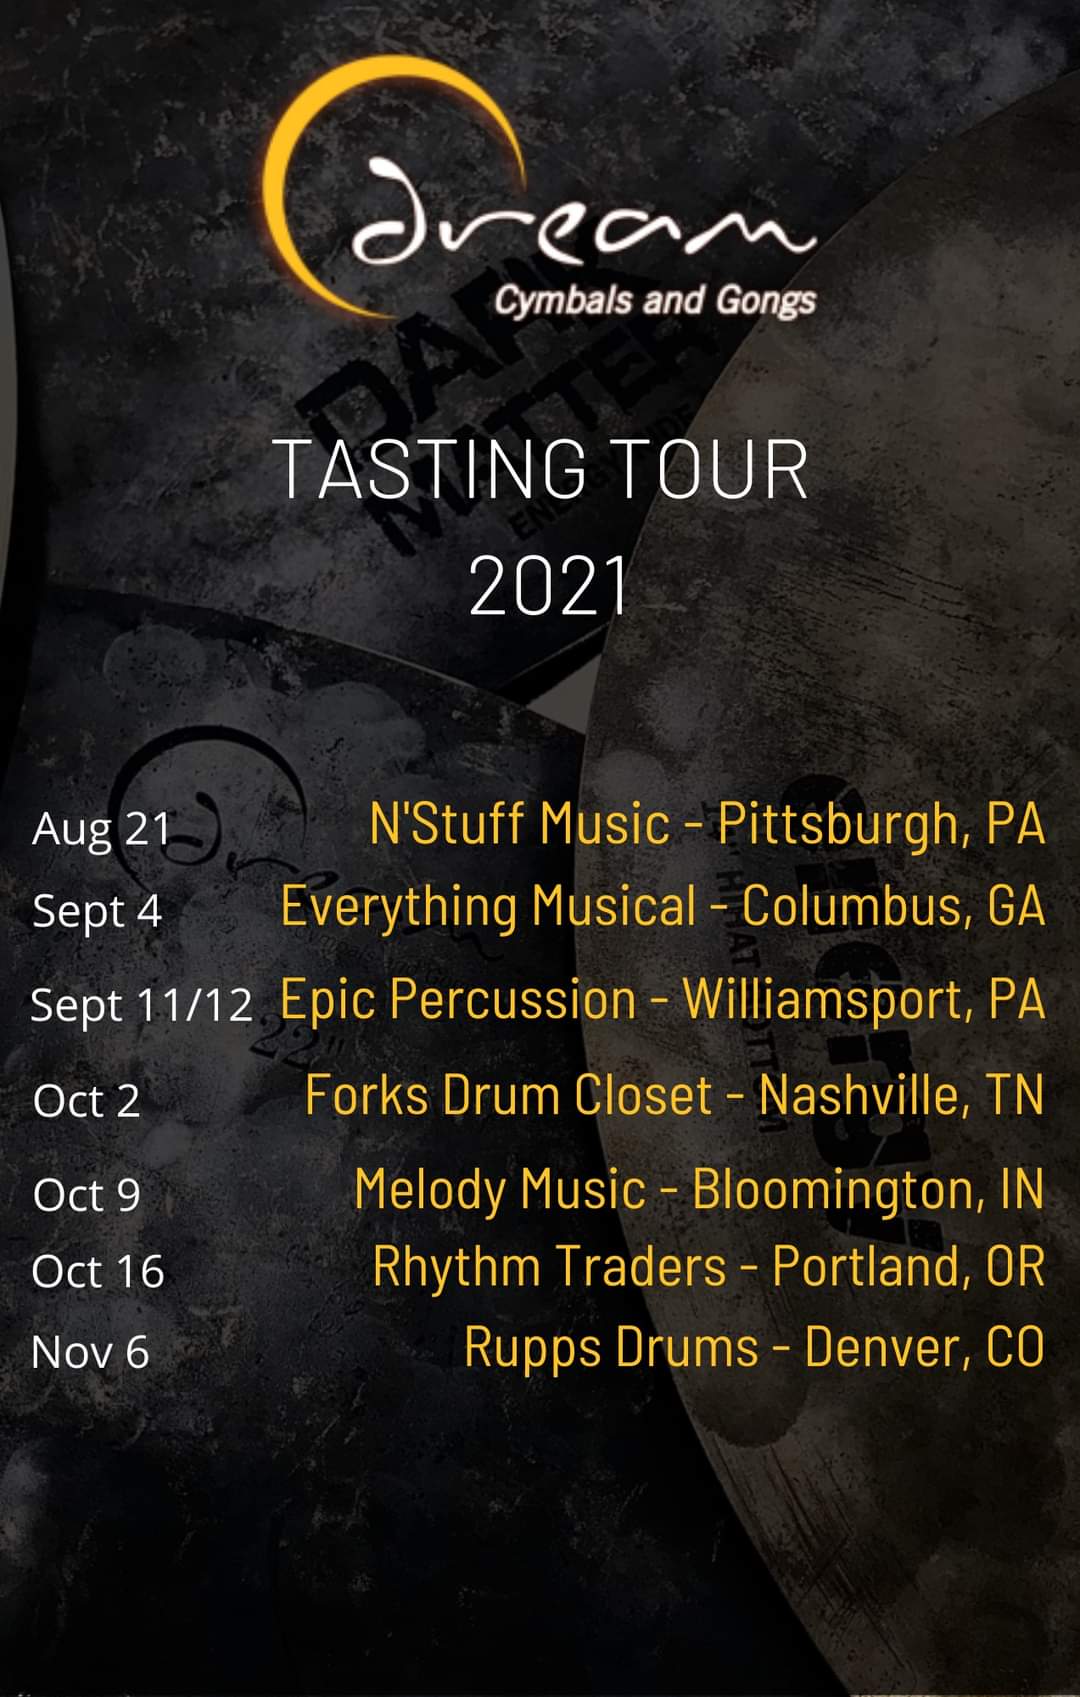 Tasting Tour Dates